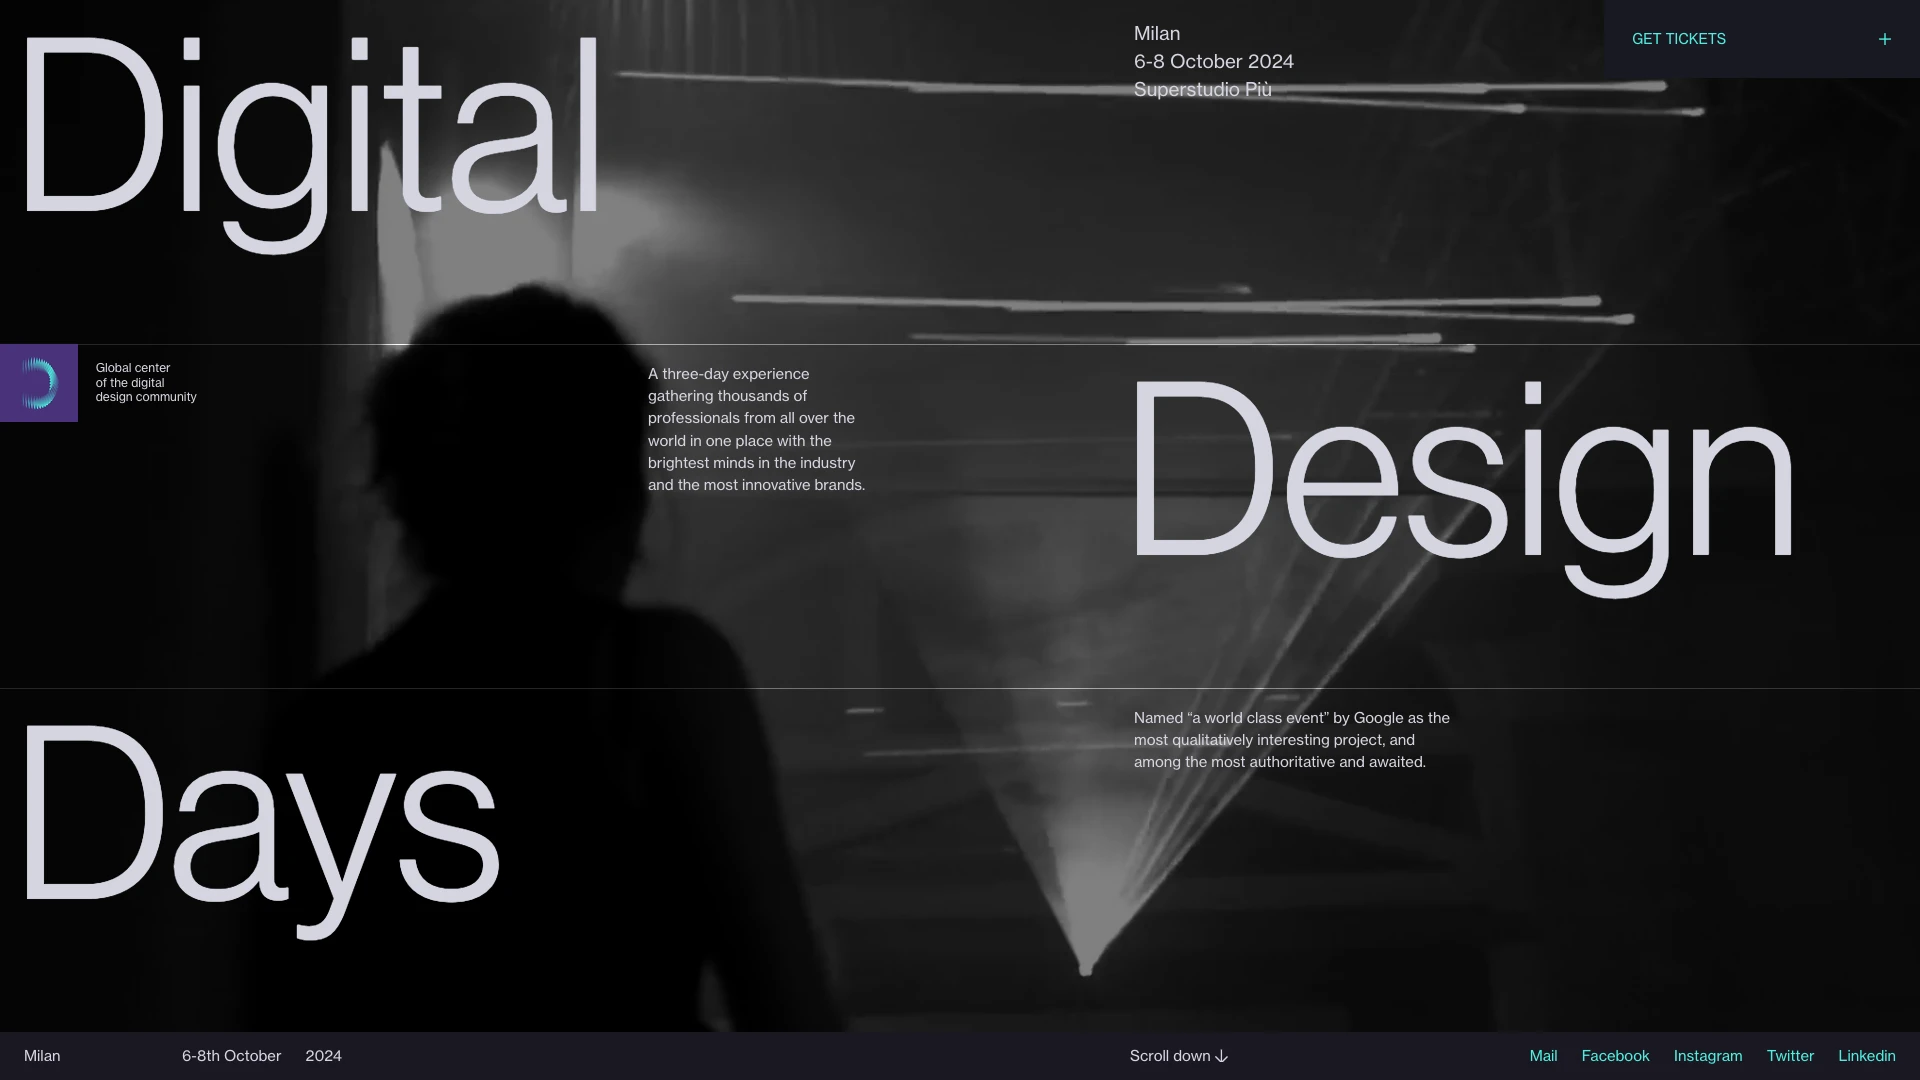 Digital Design Days